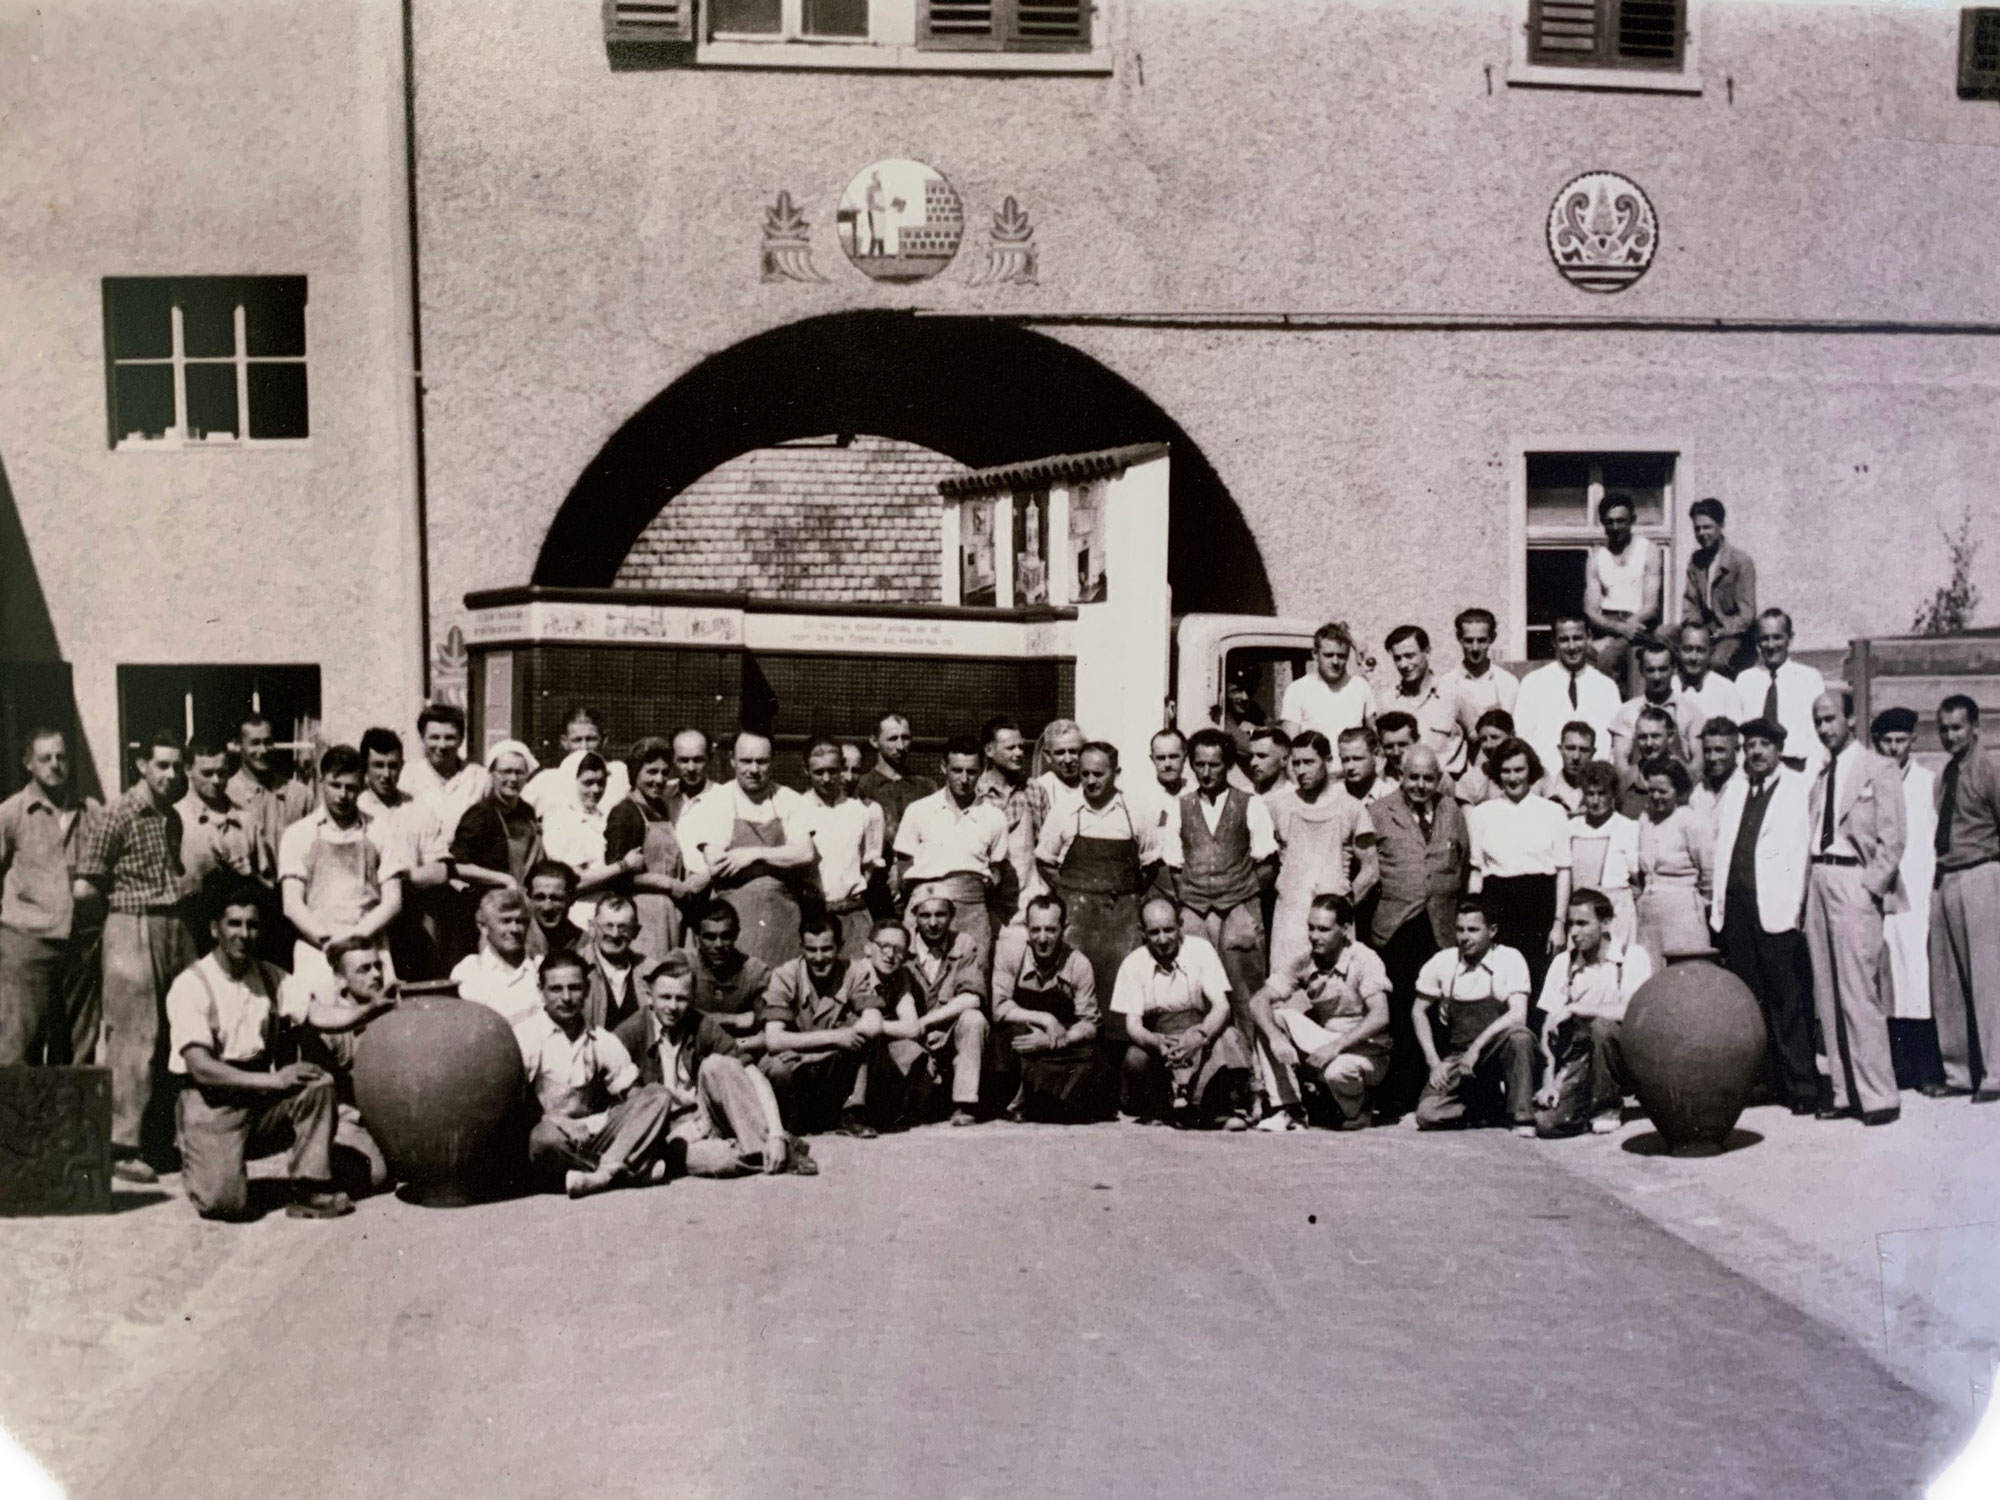 Archivbild: Belegschaft vor dem Bogen auf dem Firmengelände, ca. 1945.